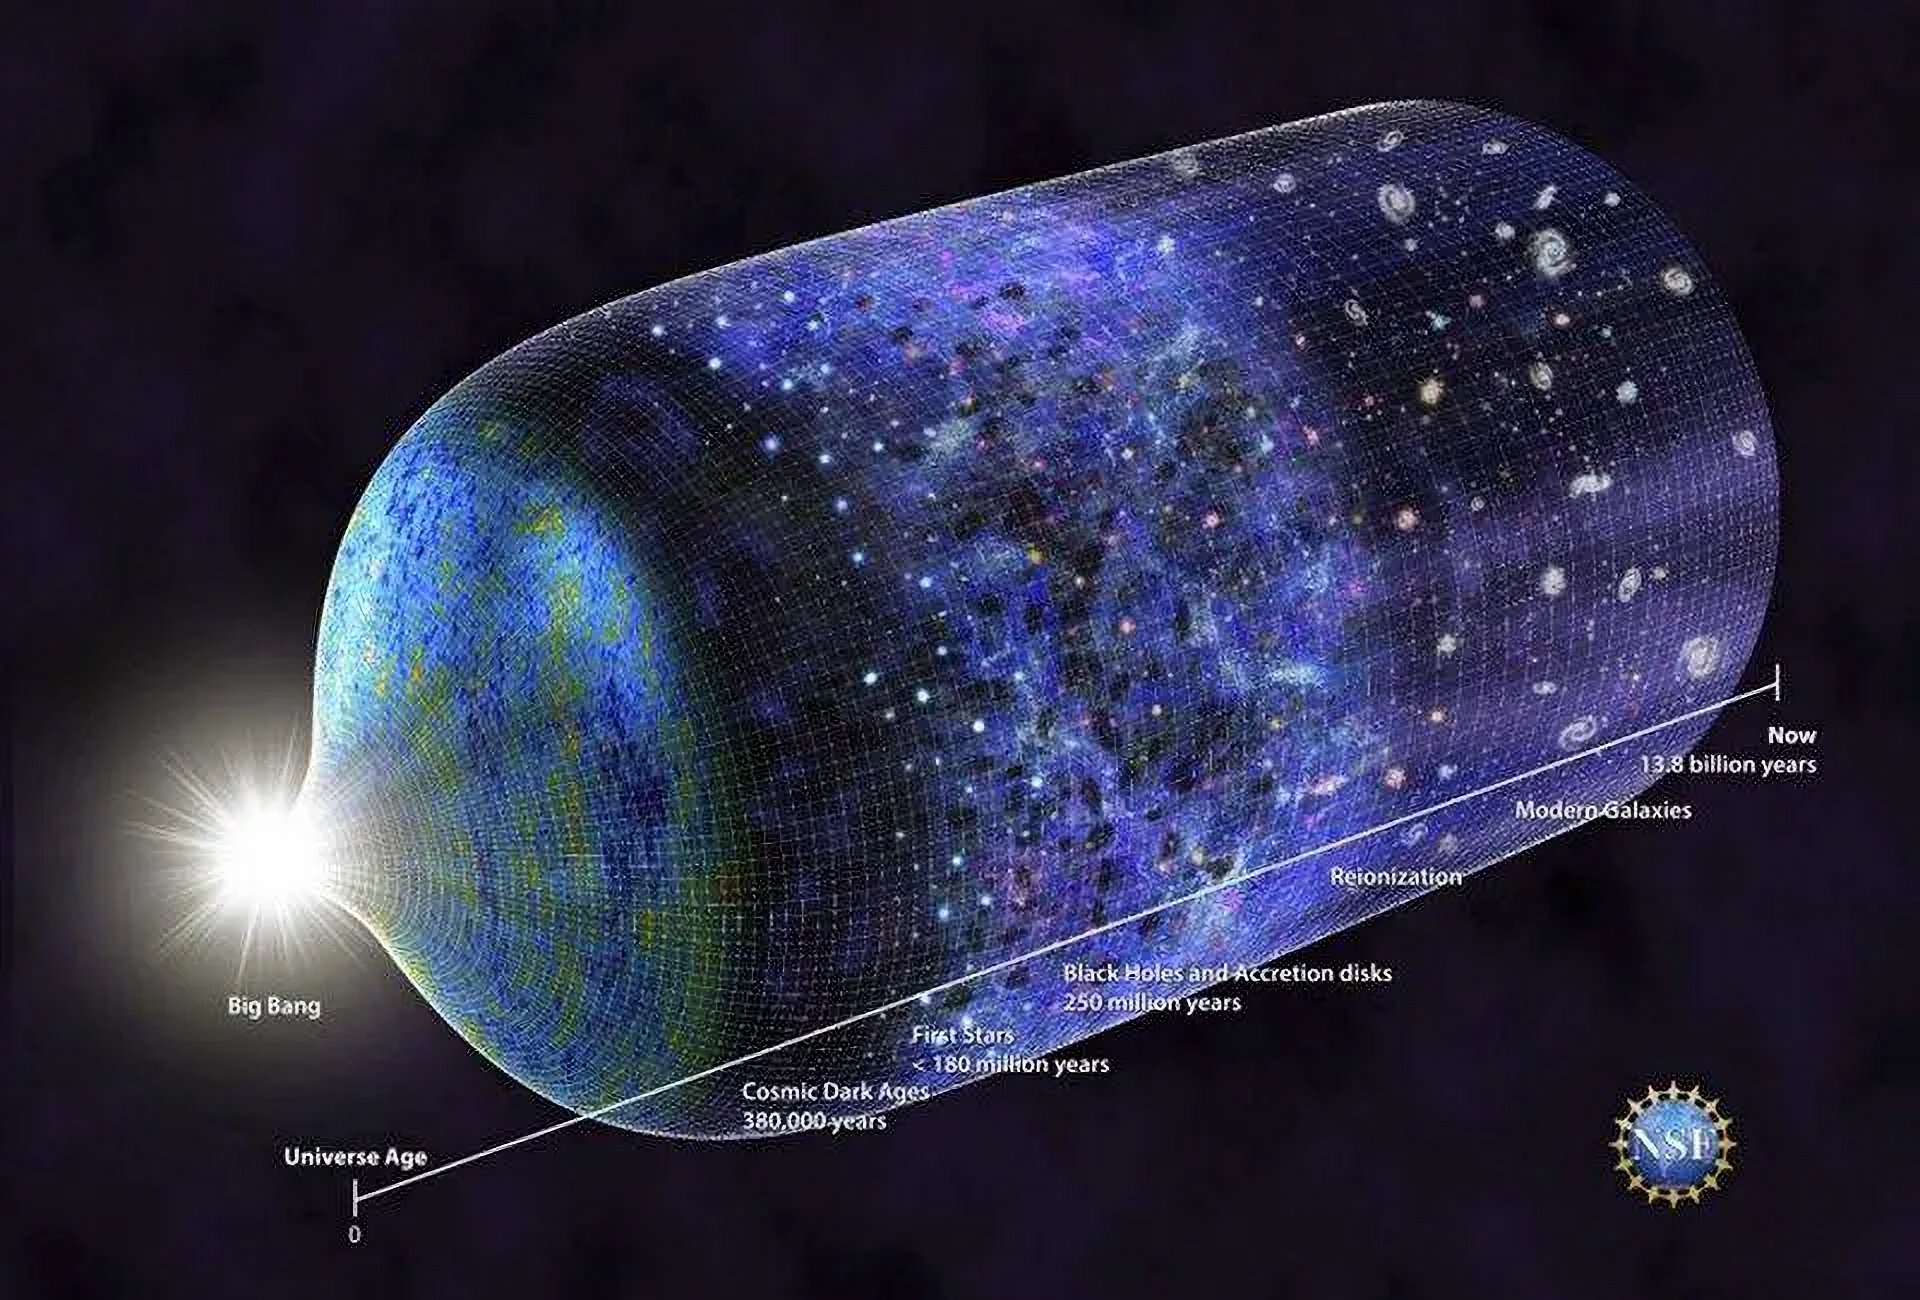 ทลายทฤษฎีเดิม เมื่อ “Big Bang” อาจไม่ใช่จุดกำเนิดของเอกภพอีกต่อไป!